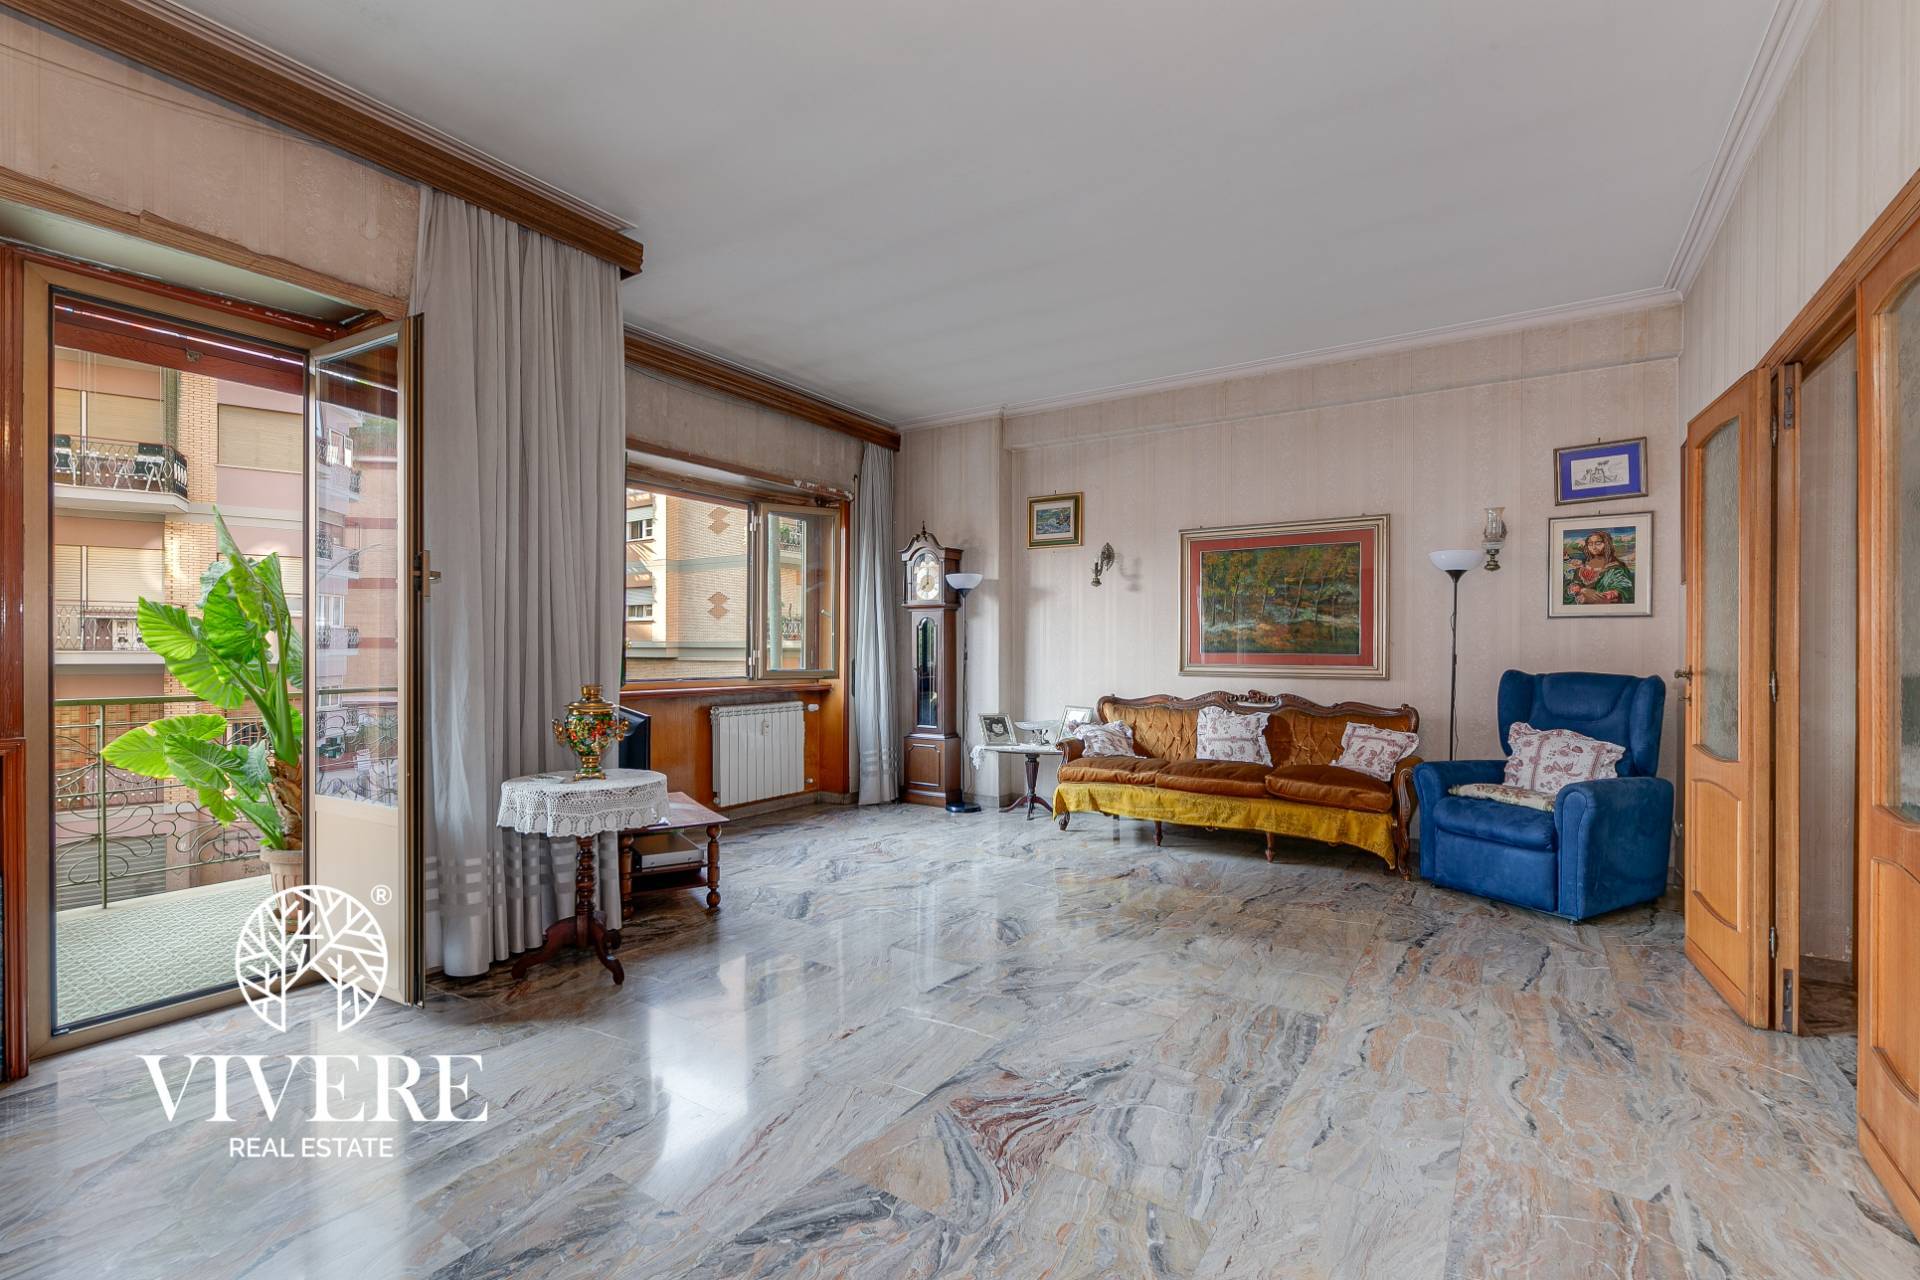 Appartamento in vendita a Roma, 7 locali, zona Zona: 24 . Gianicolense - Colli Portuensi - Monteverde, prezzo € 490.000 | CambioCasa.it